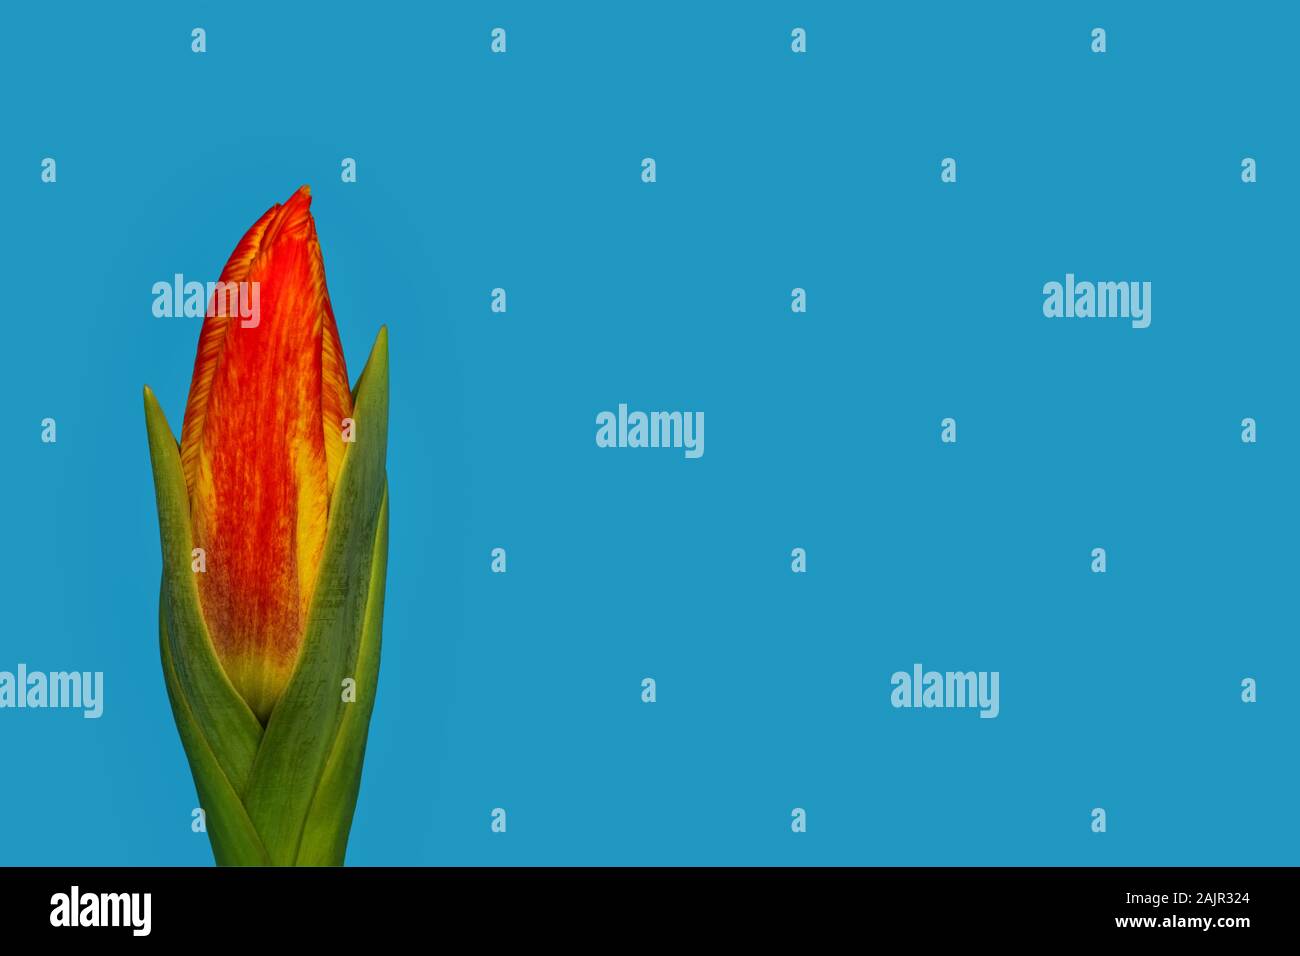 Giallo e rosso tulipano colorati, ancora chiusa la testa di fiori racchiusi da foglie verdi, nella parte anteriore della luce sfondo blu Foto Stock